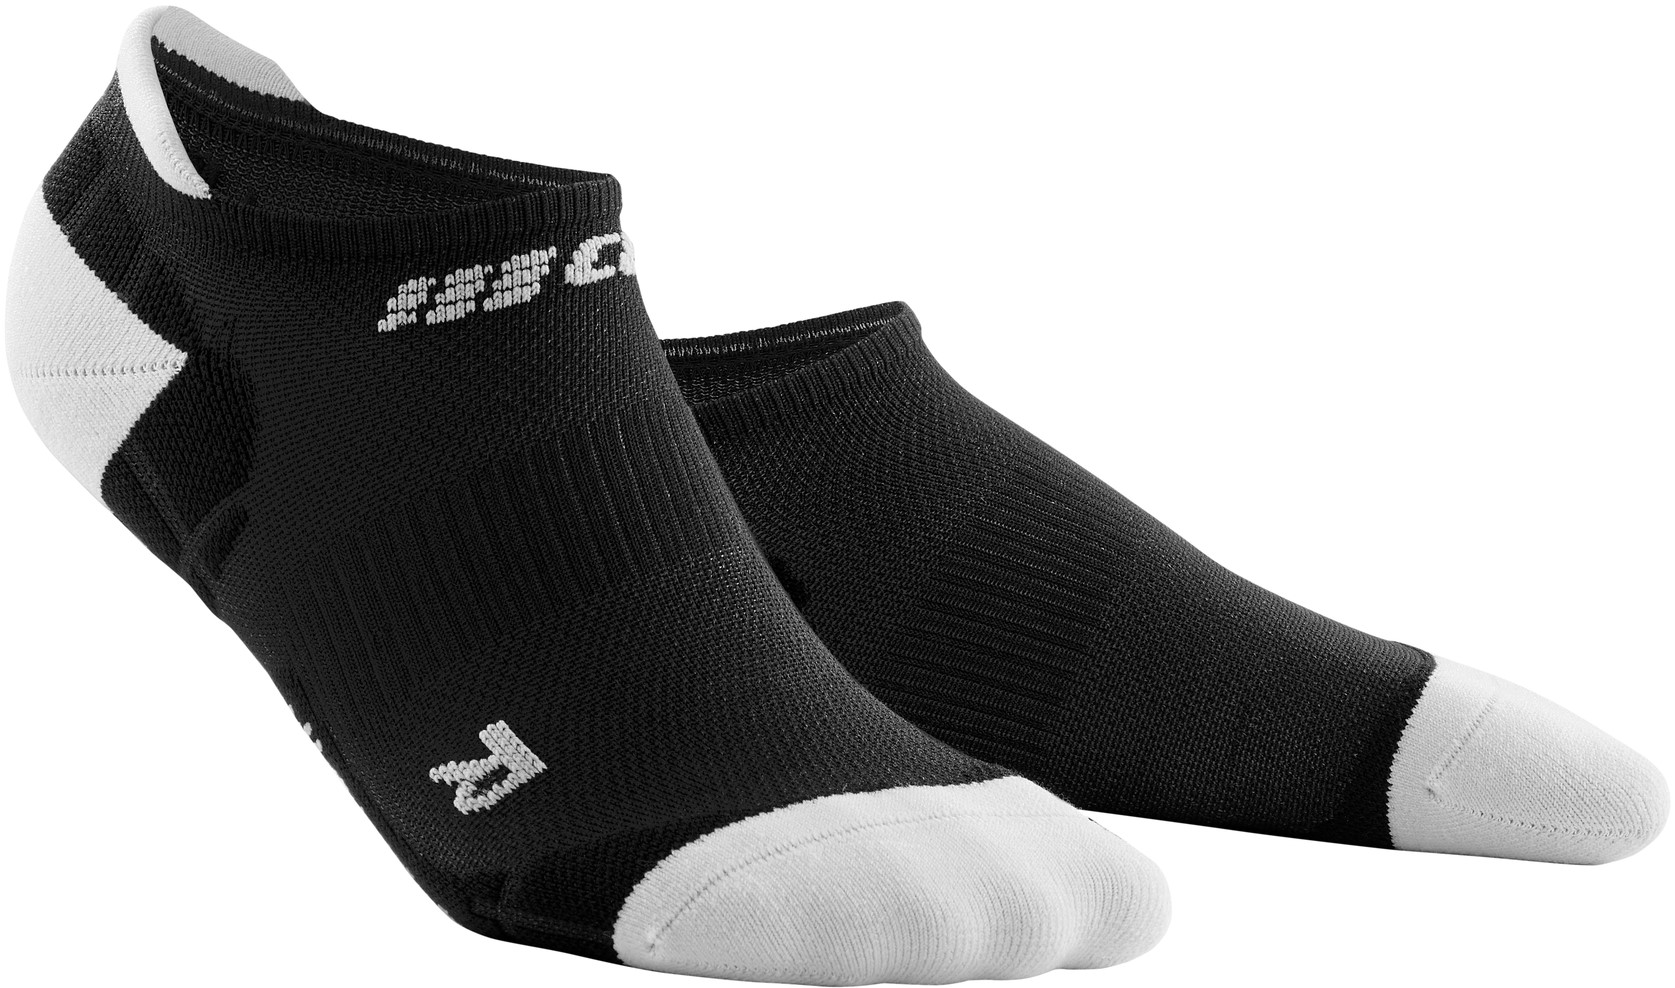 CEP dámské nízké běžecké kompresní ponožky ULTRALIGHT - black / light grey II (EUR 34-37)